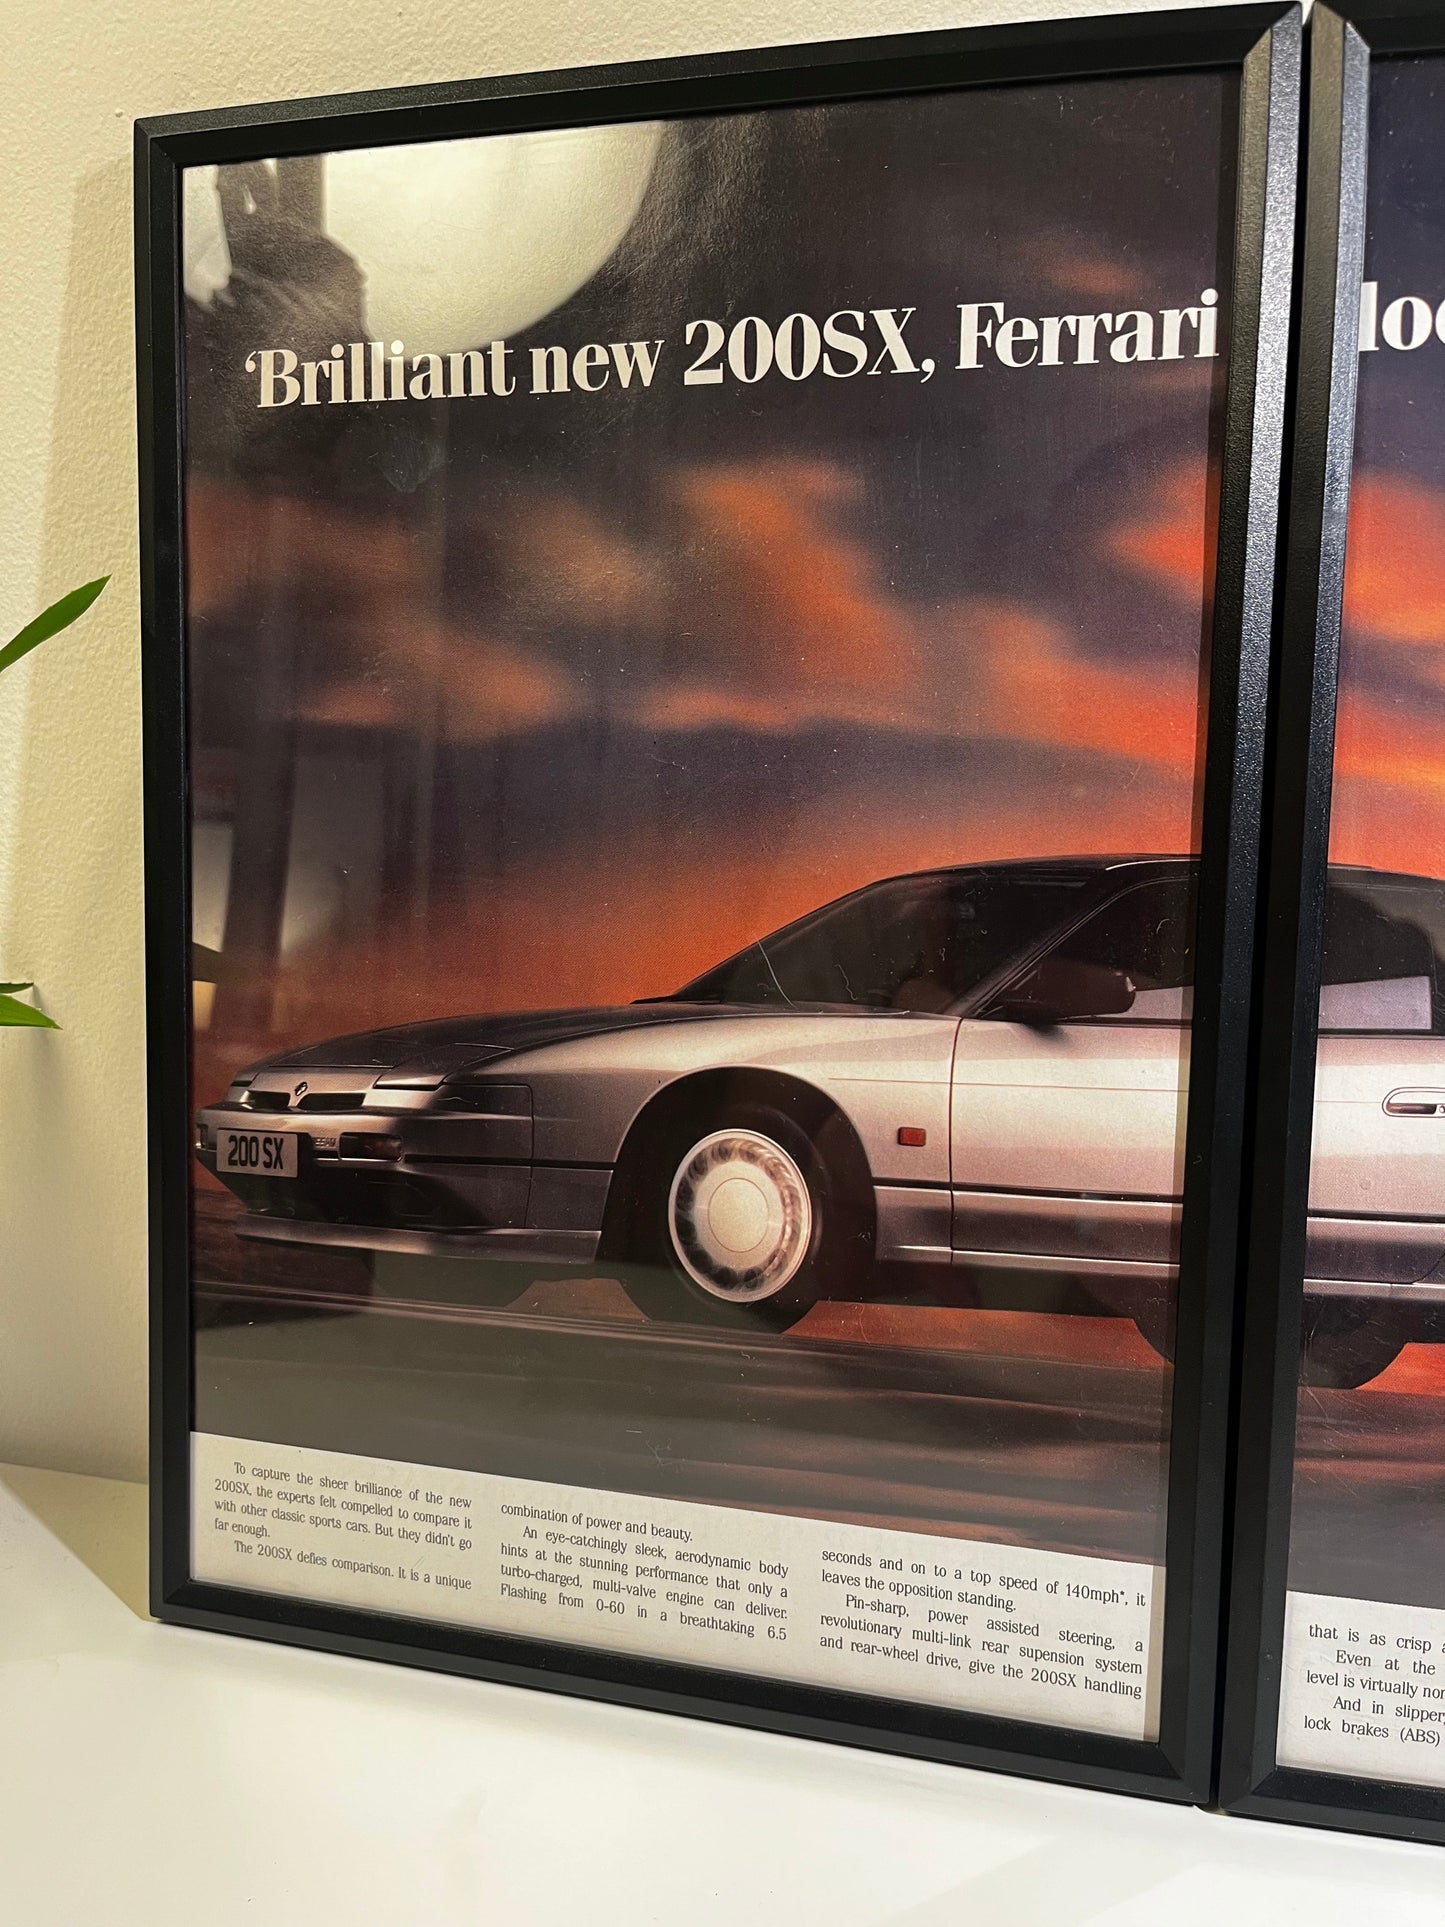 Original 90s Nissan 200sx Advert